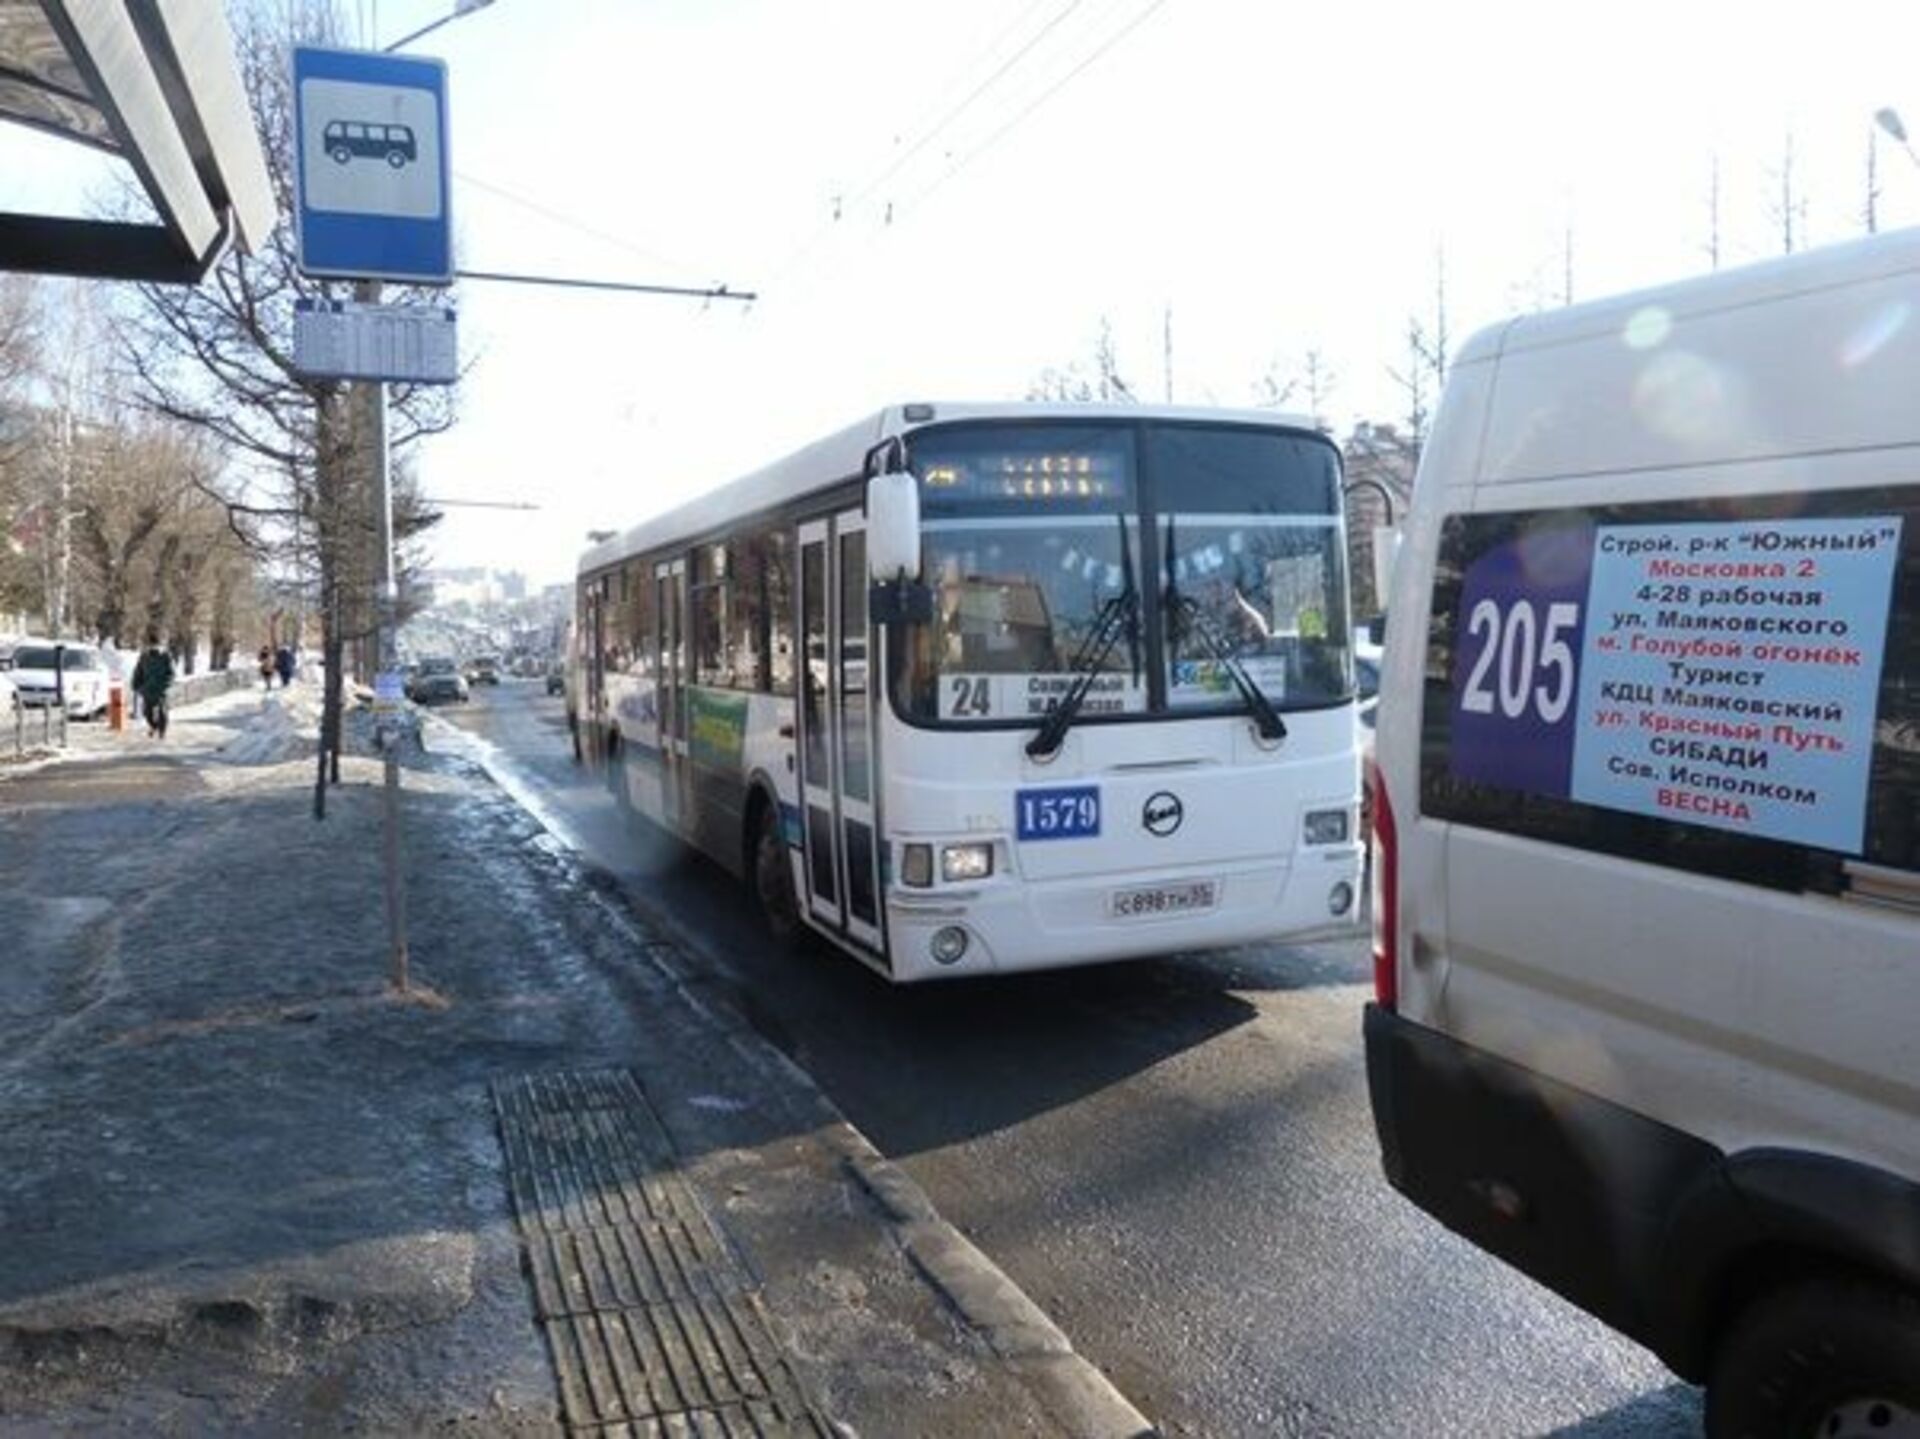 Сайт автобус омск. Общественный транспорт Омск. Омские автобусы. Осские автобусы. Автобусы фото в Омске.